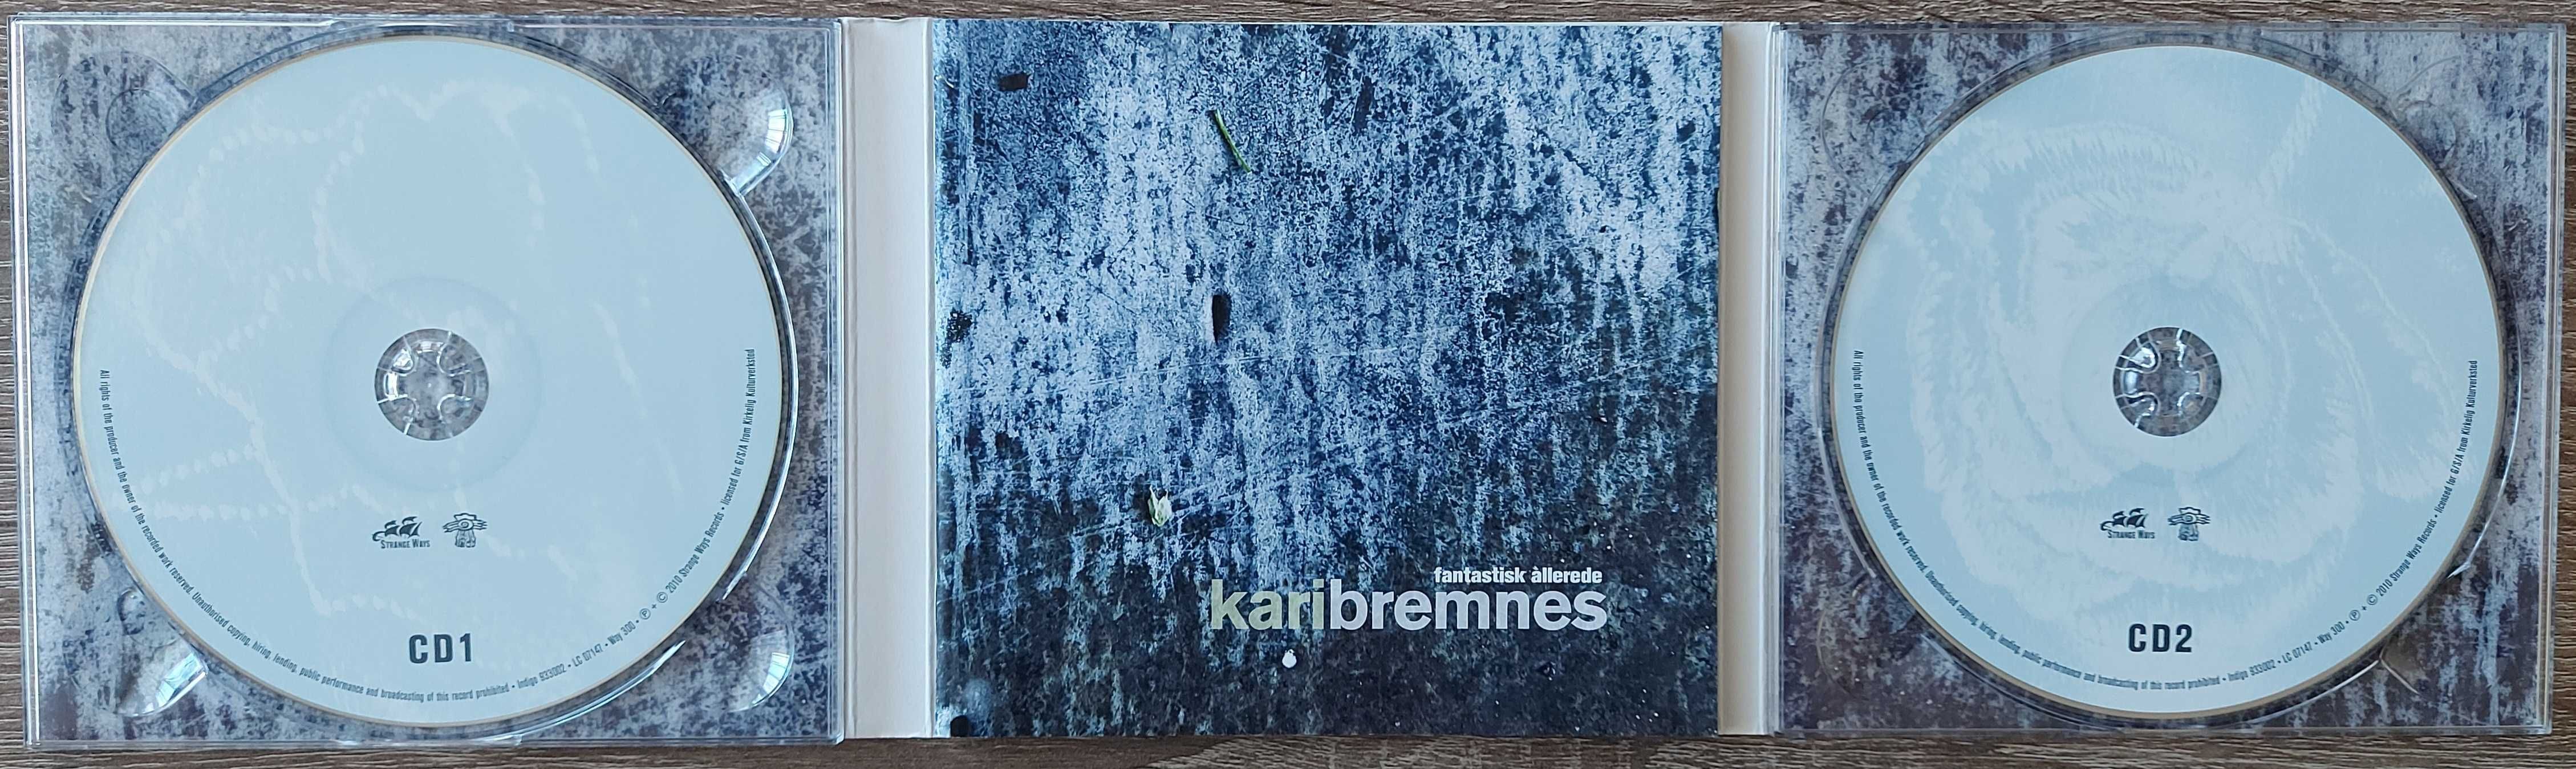 Kari Bremnes – Fantastisk Allerede